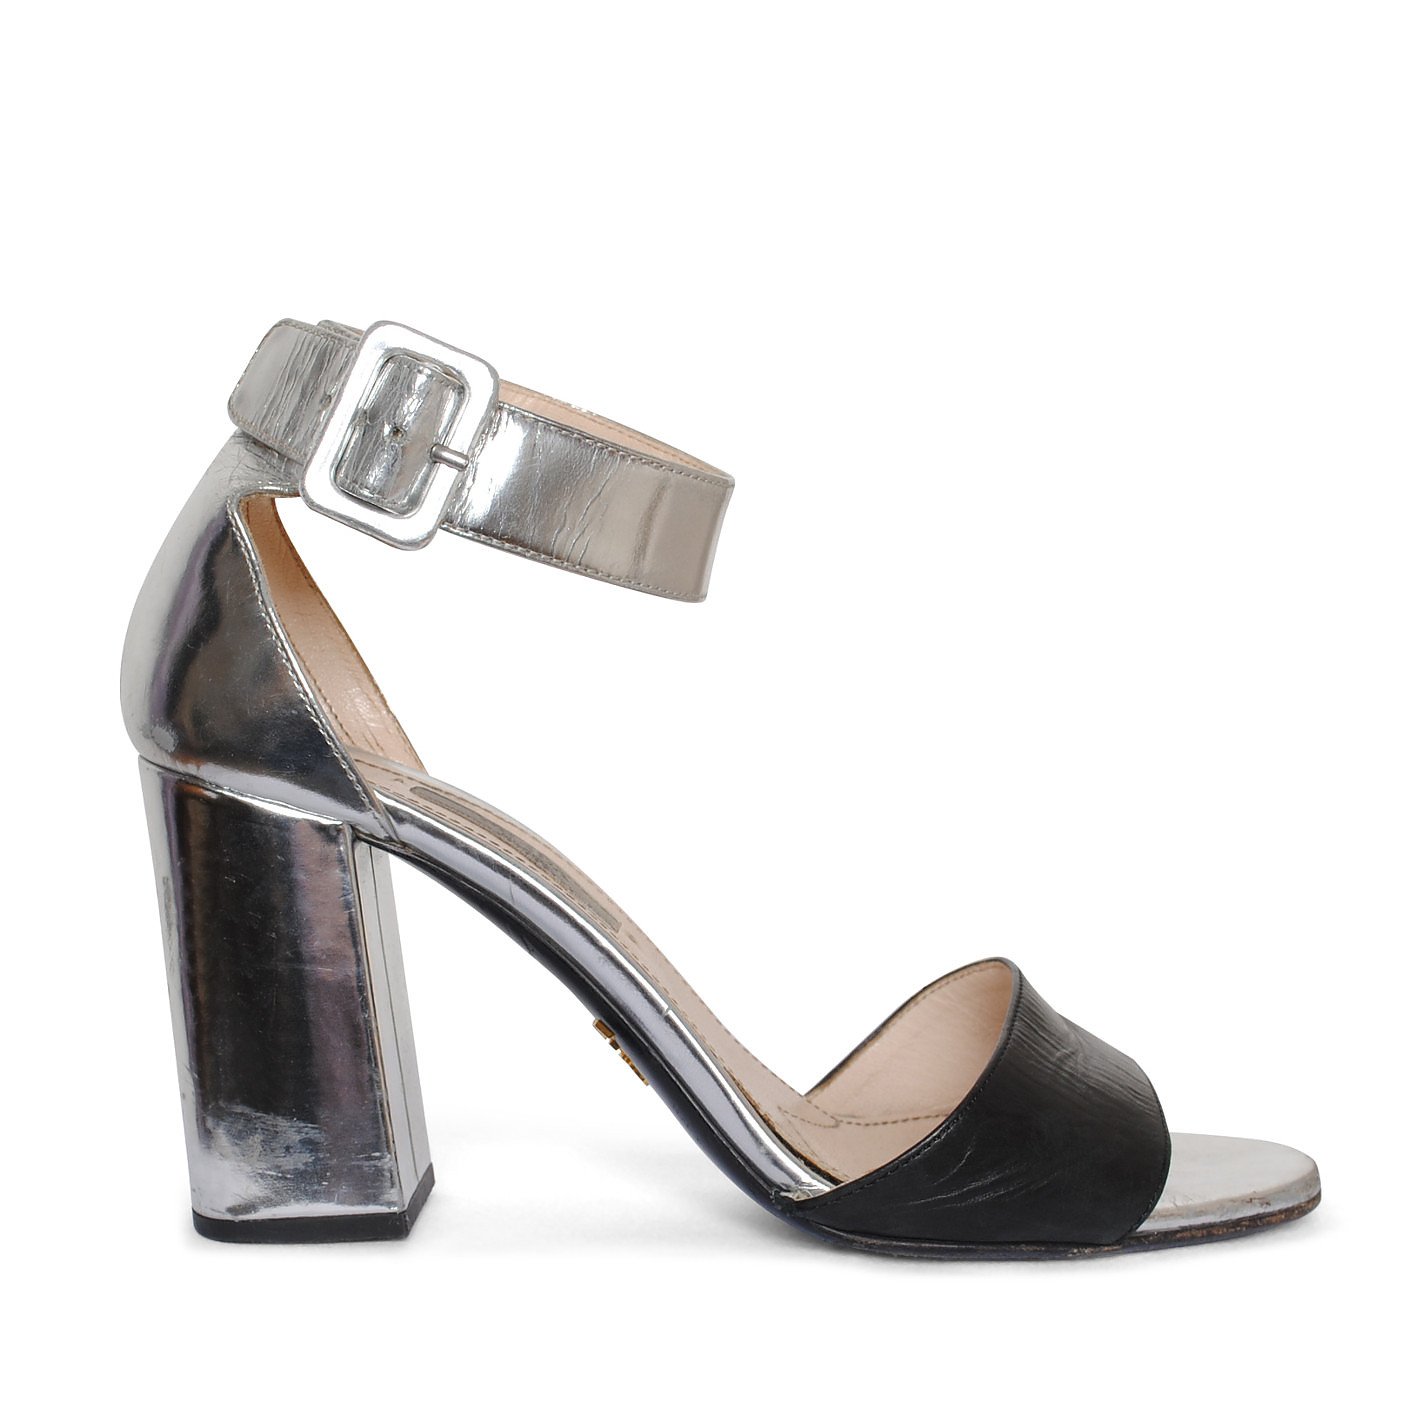 PRADA Metallic Block-Heel Sandals